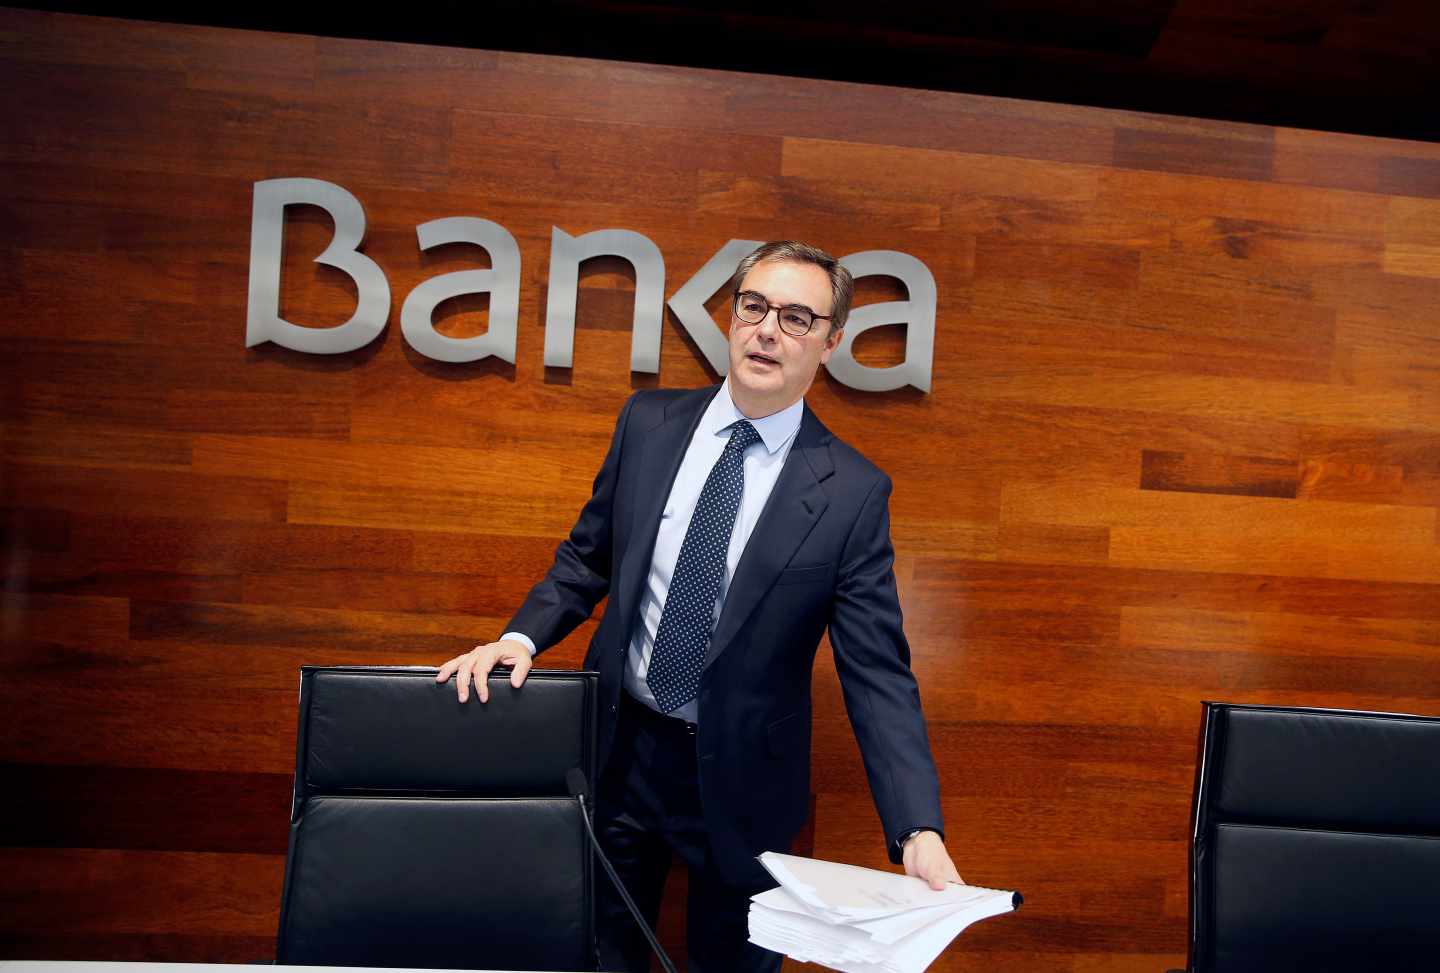 El consejero delegado de Bankia, José Sevilla, a su llegada a rueda de prensa donde hoy presentará resultados de las cuentas de 2017.